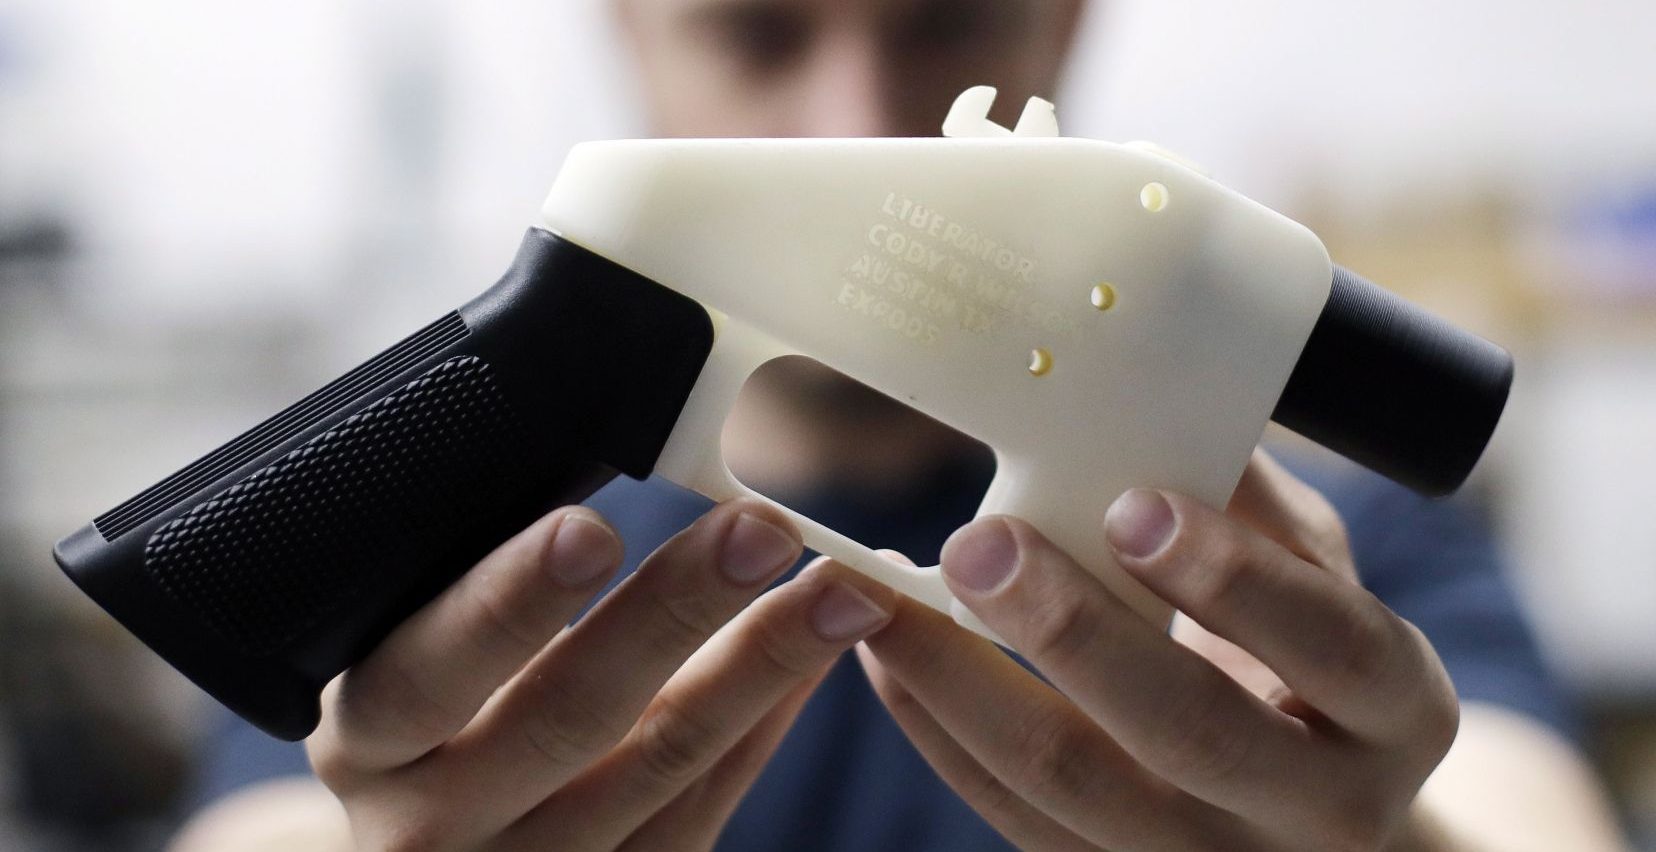 3D printed Guns